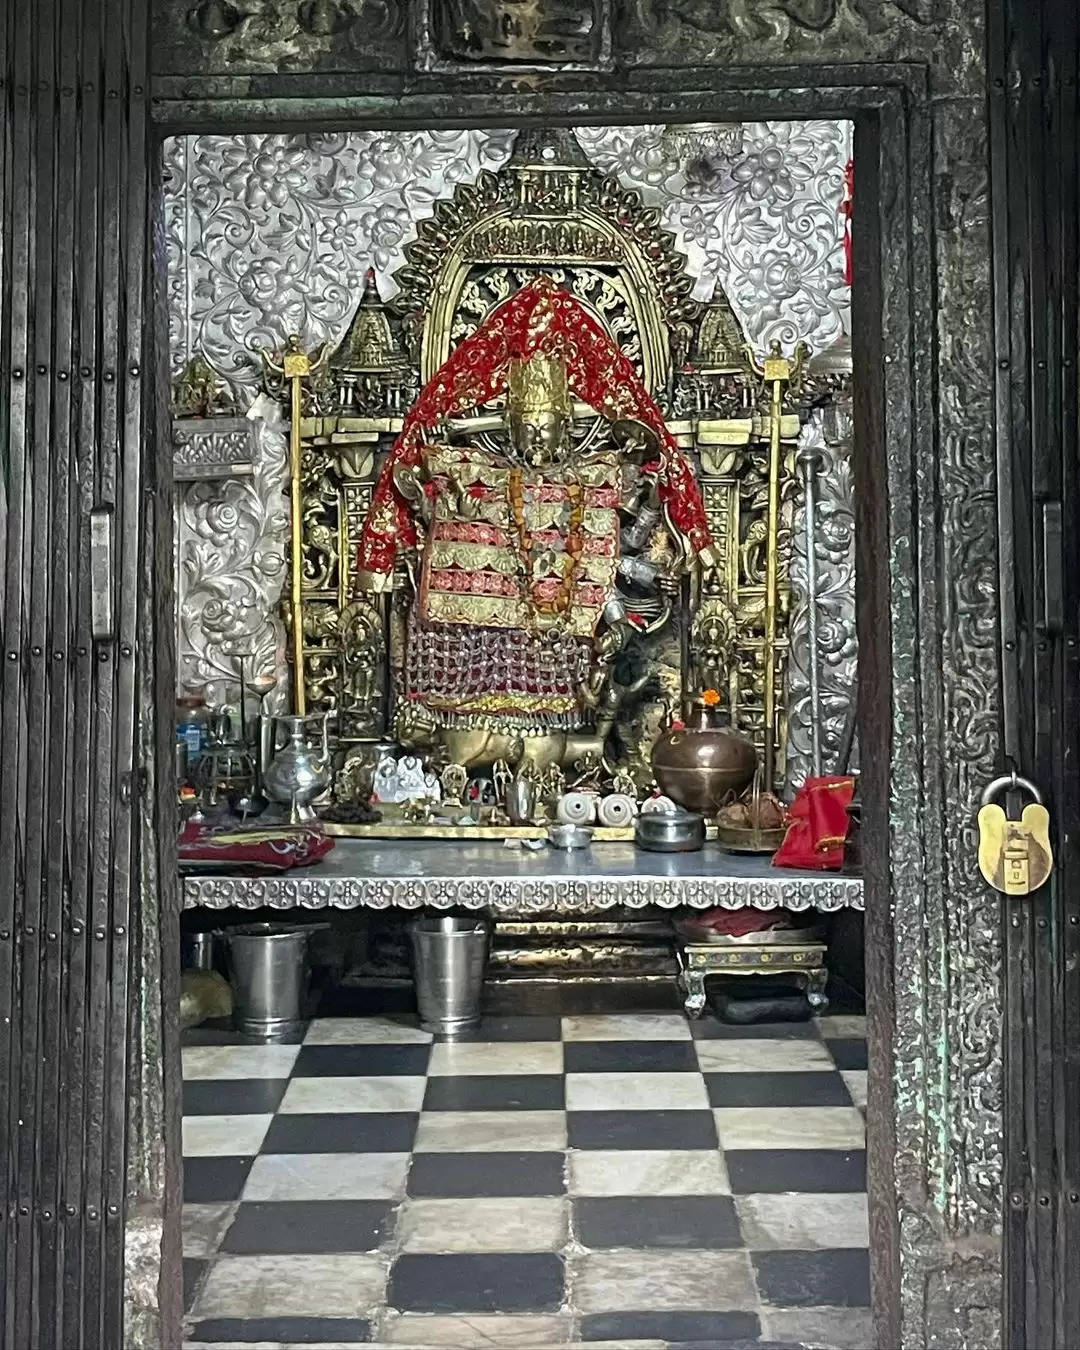 माता जी के दर्शन करने मंदिर पहुंची प्रीति जिंटा, साड़ी में दिखी खूबसूरत